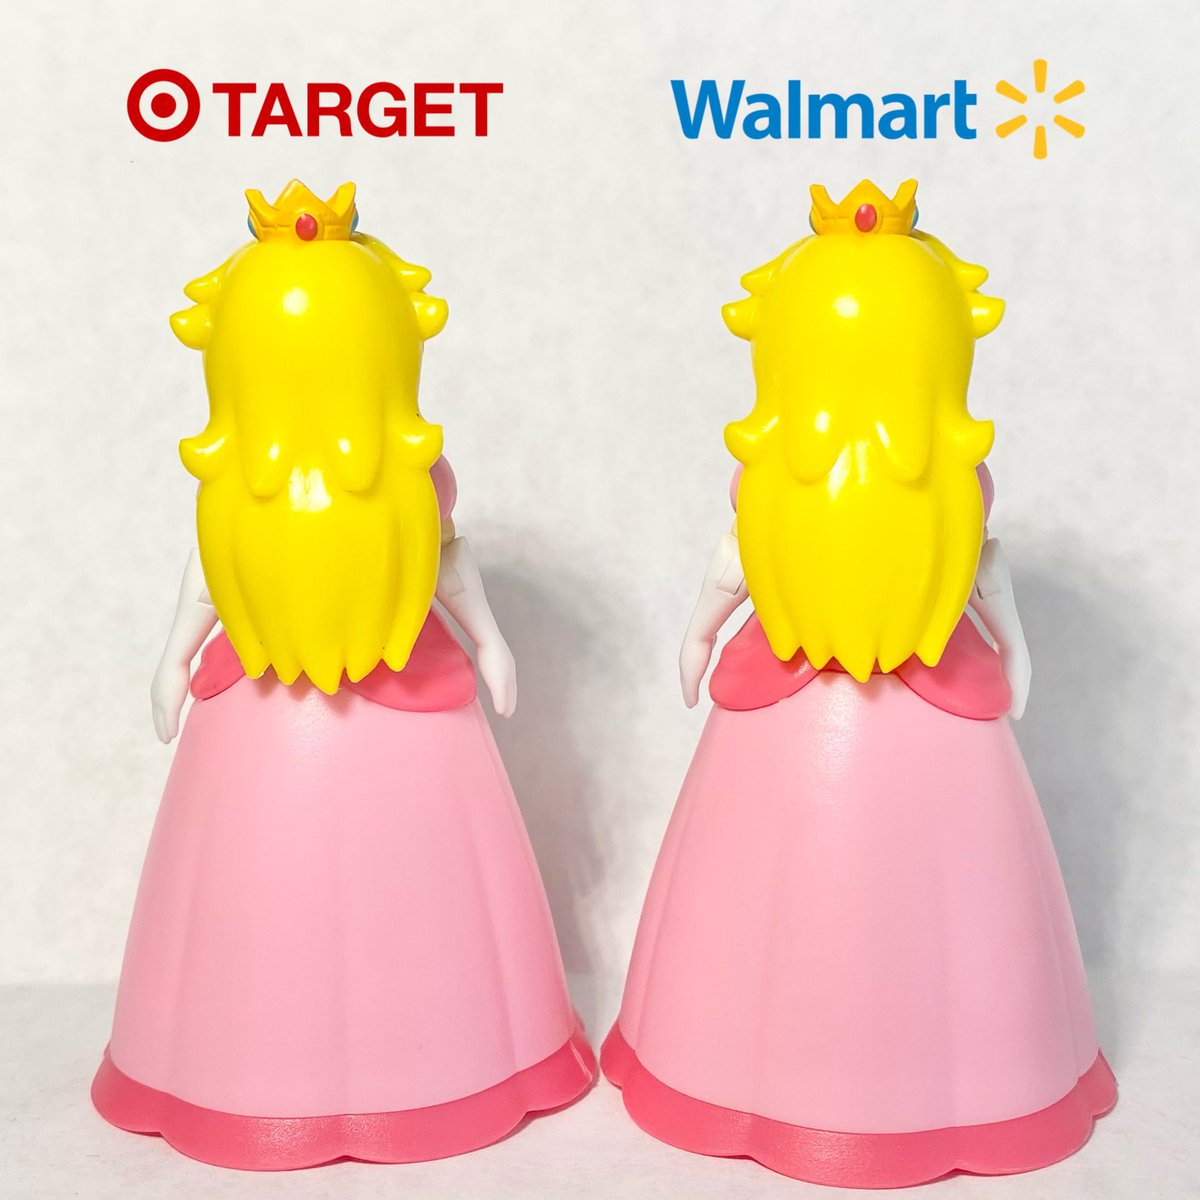 Target Vs walmart 2.5 peach figure 

#peach #princesspeach #princesspeach👑 #princesspeach🍑 #nintendo #nintendodirect #supermariobroswonder #jakks #jakkspacific #peachplush #princesspeachplush